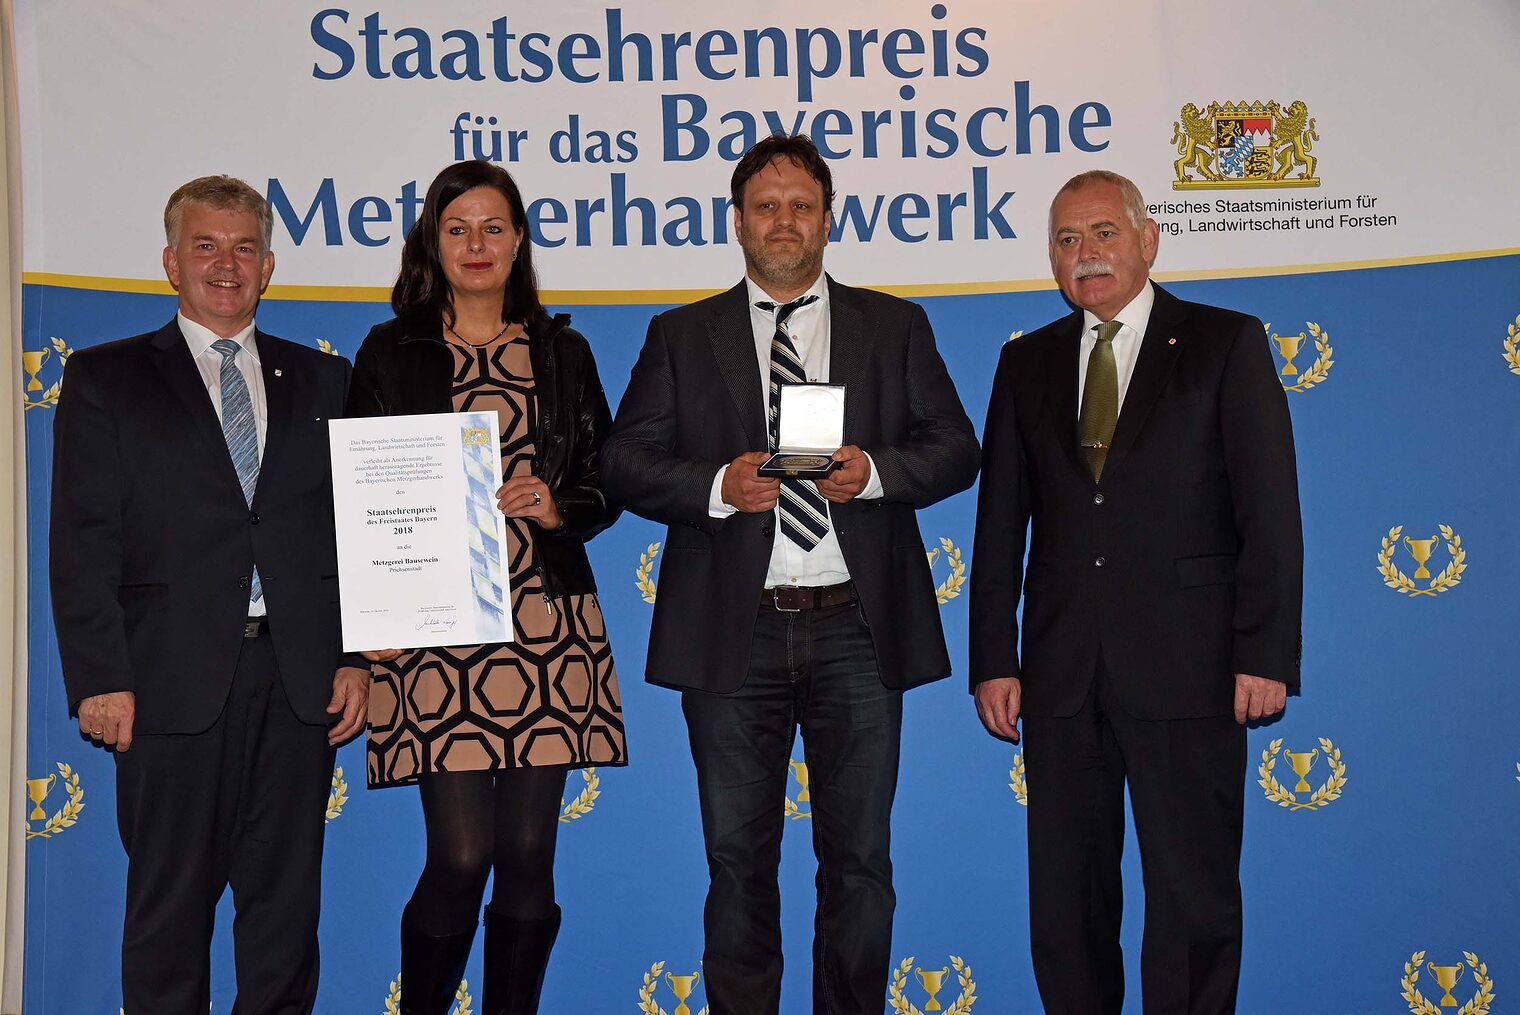 Staatsehrenpreis 2018 | Metzgerei Bausewein Prichsenstadt